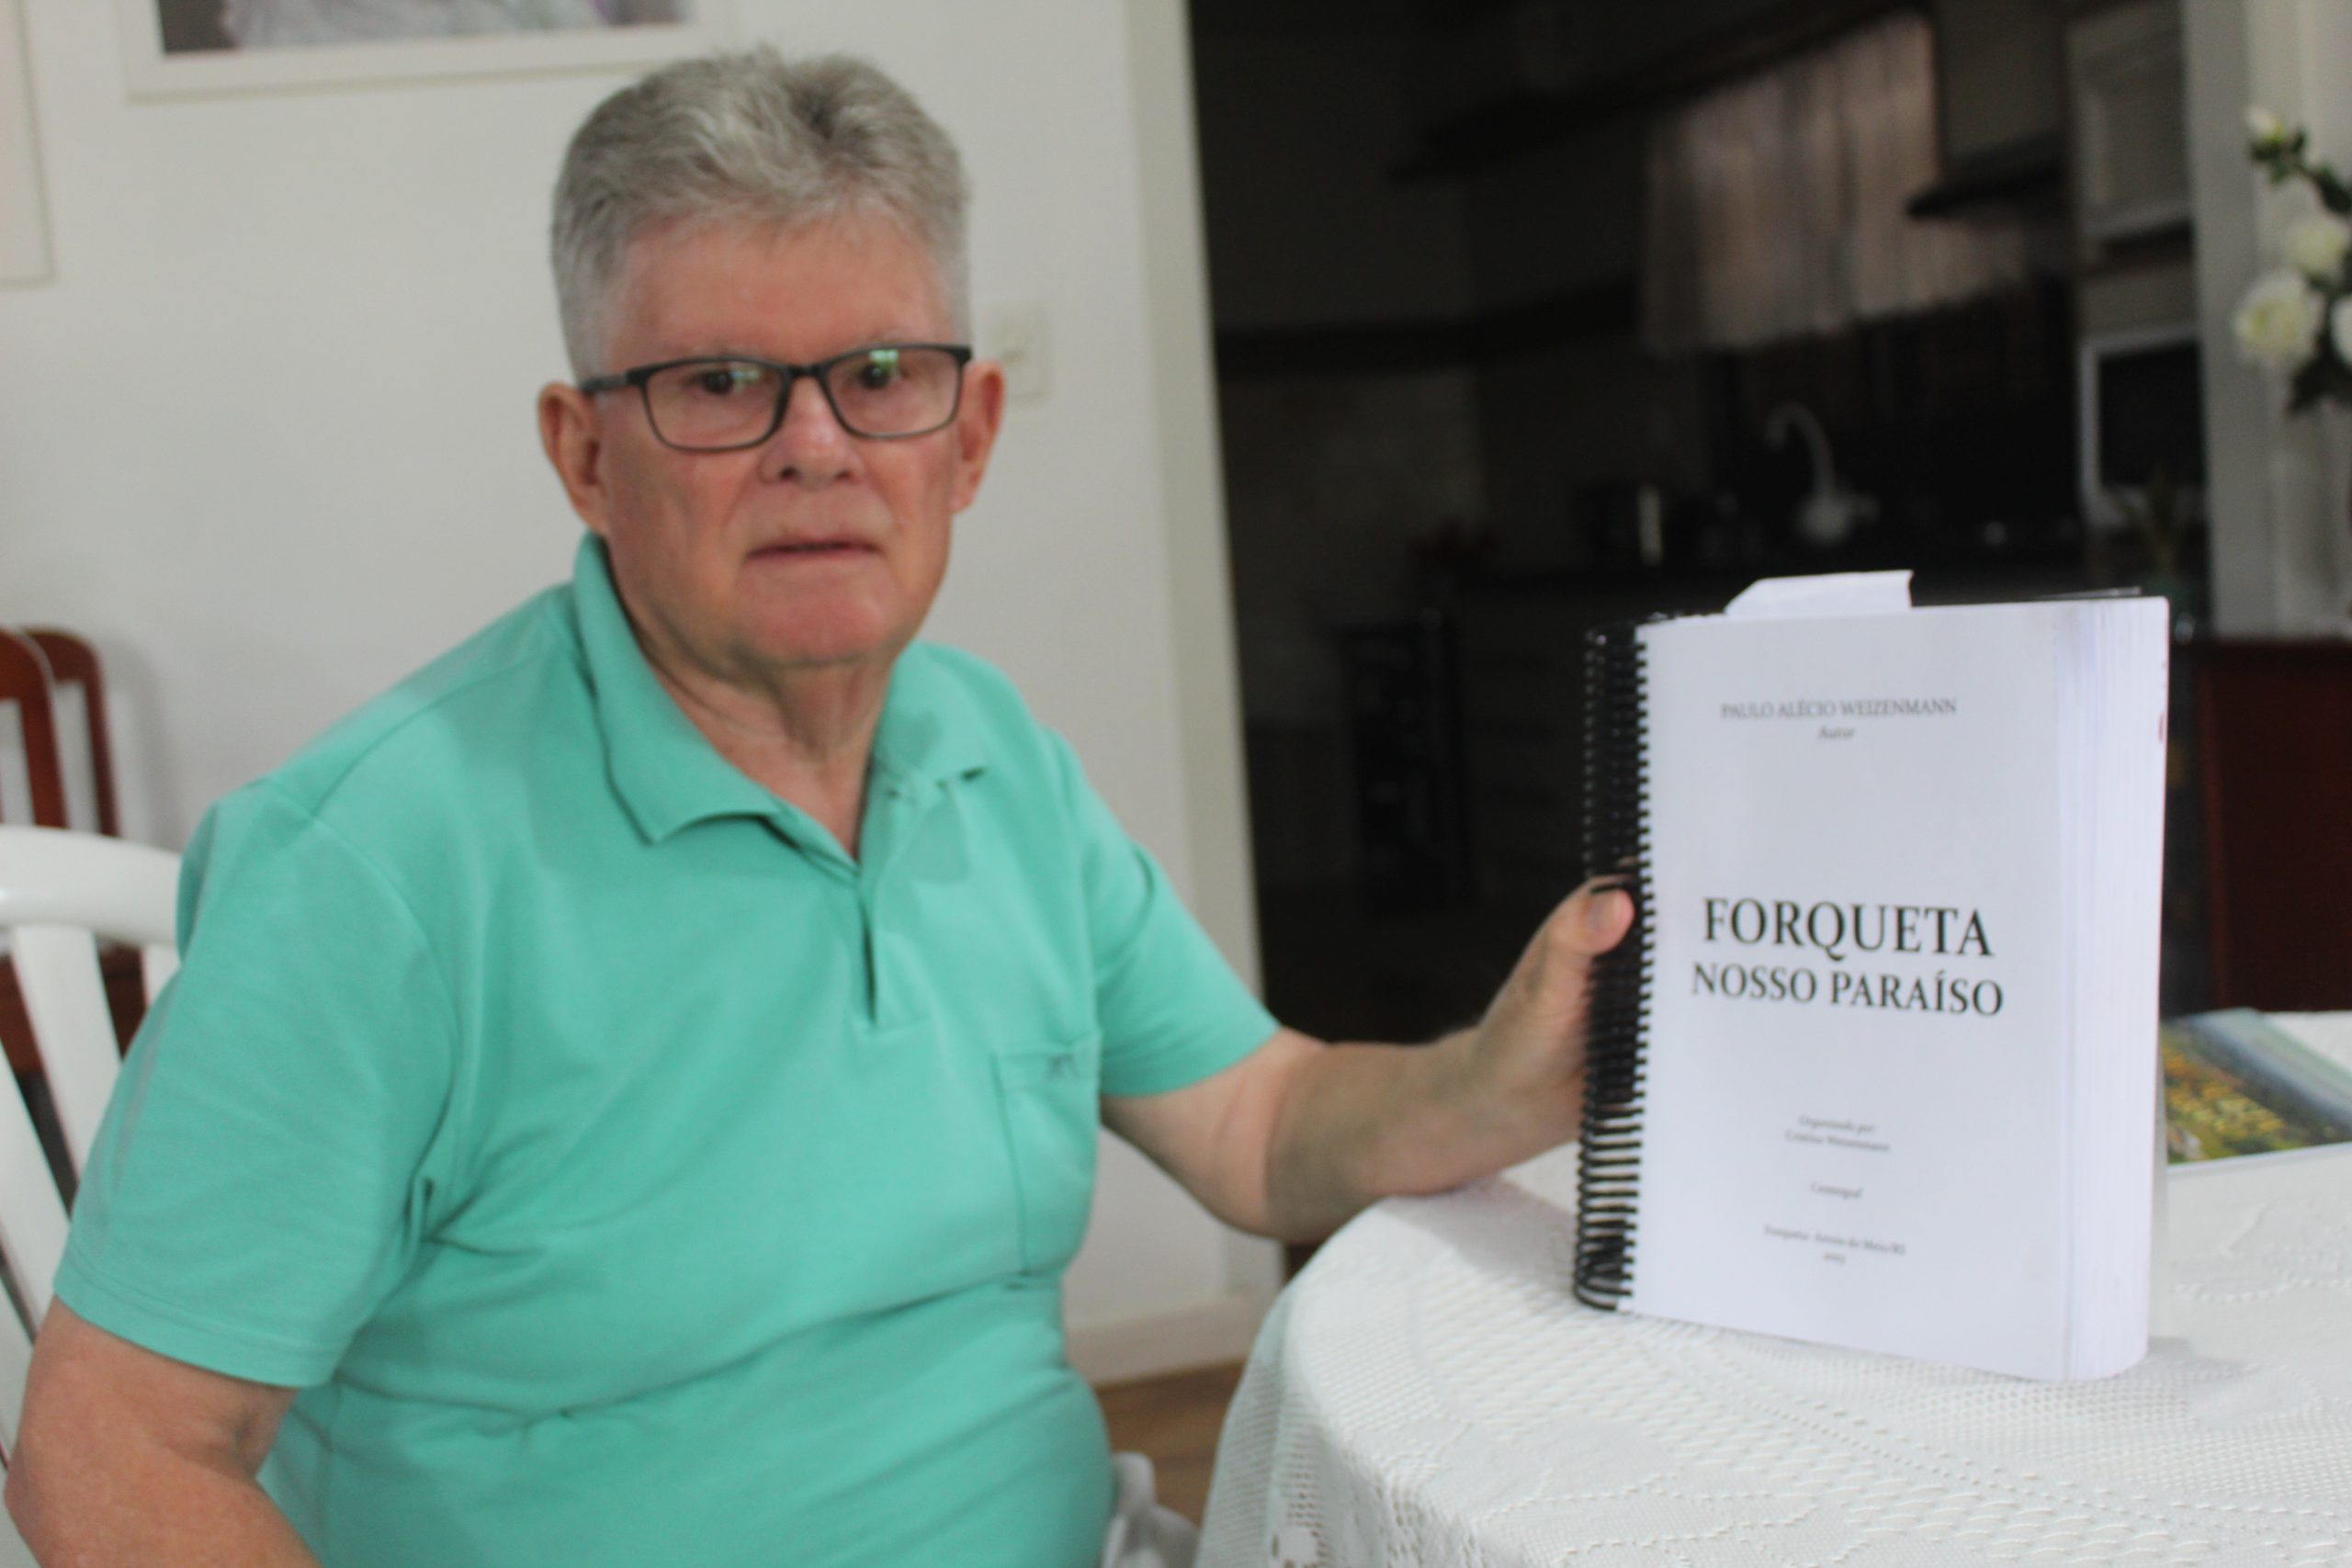 Professor aposentado lança livro sobre a história de Forqueta